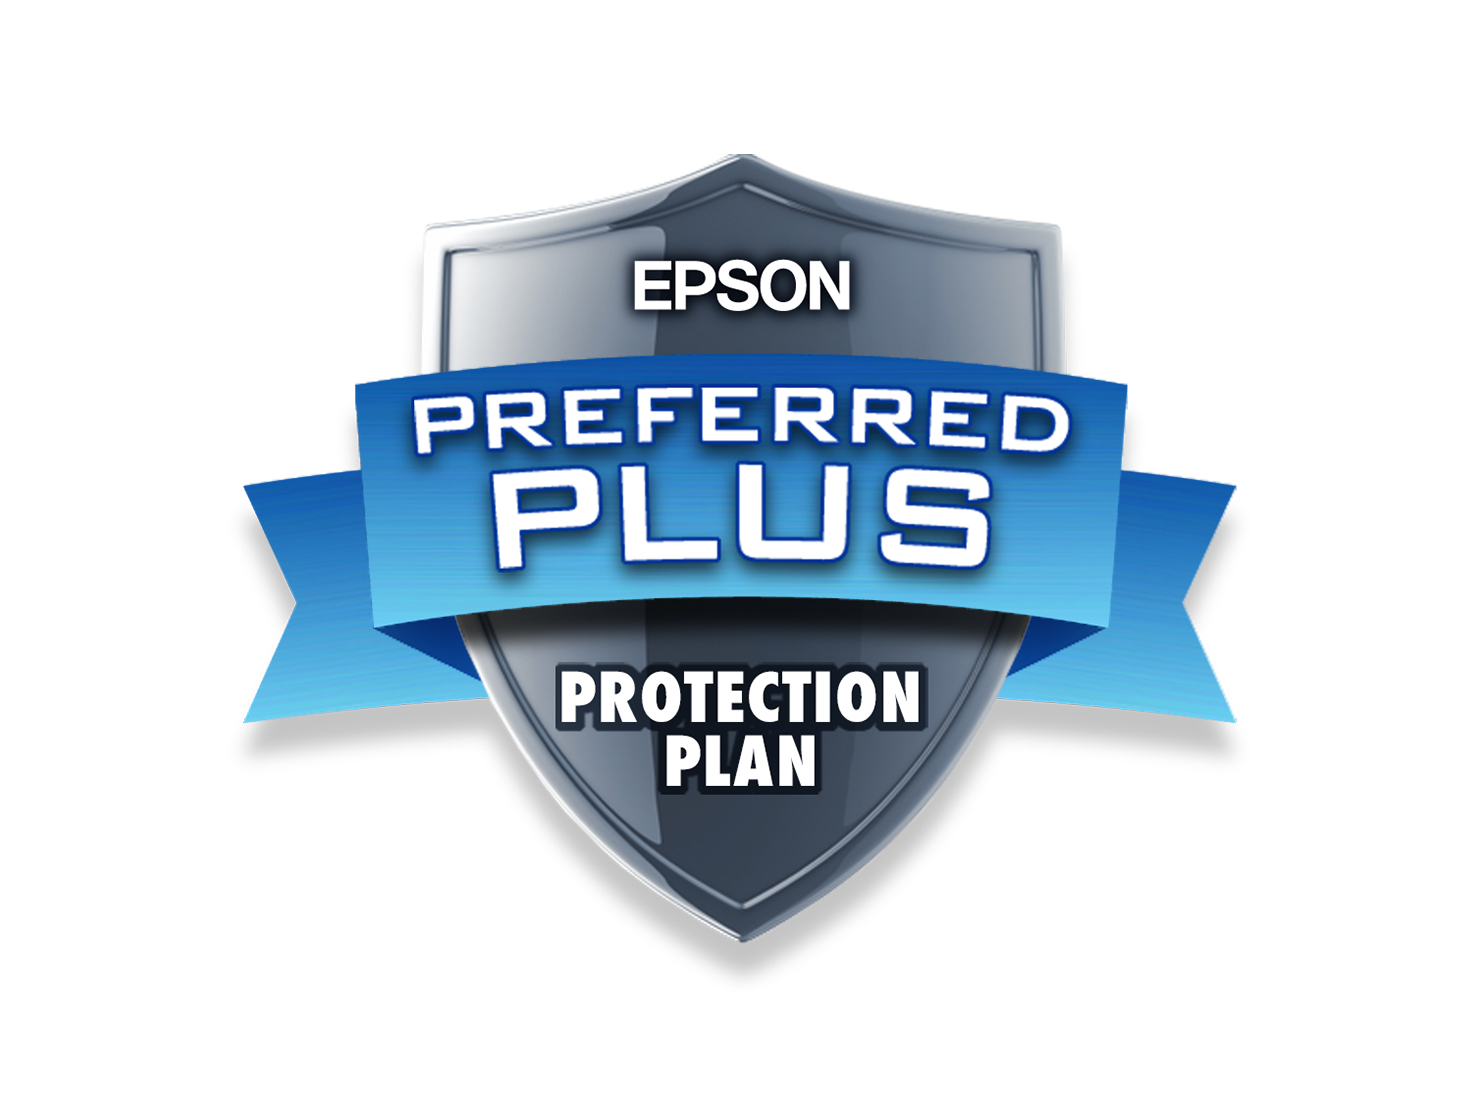 Epson Preferred Plus Protection Plan